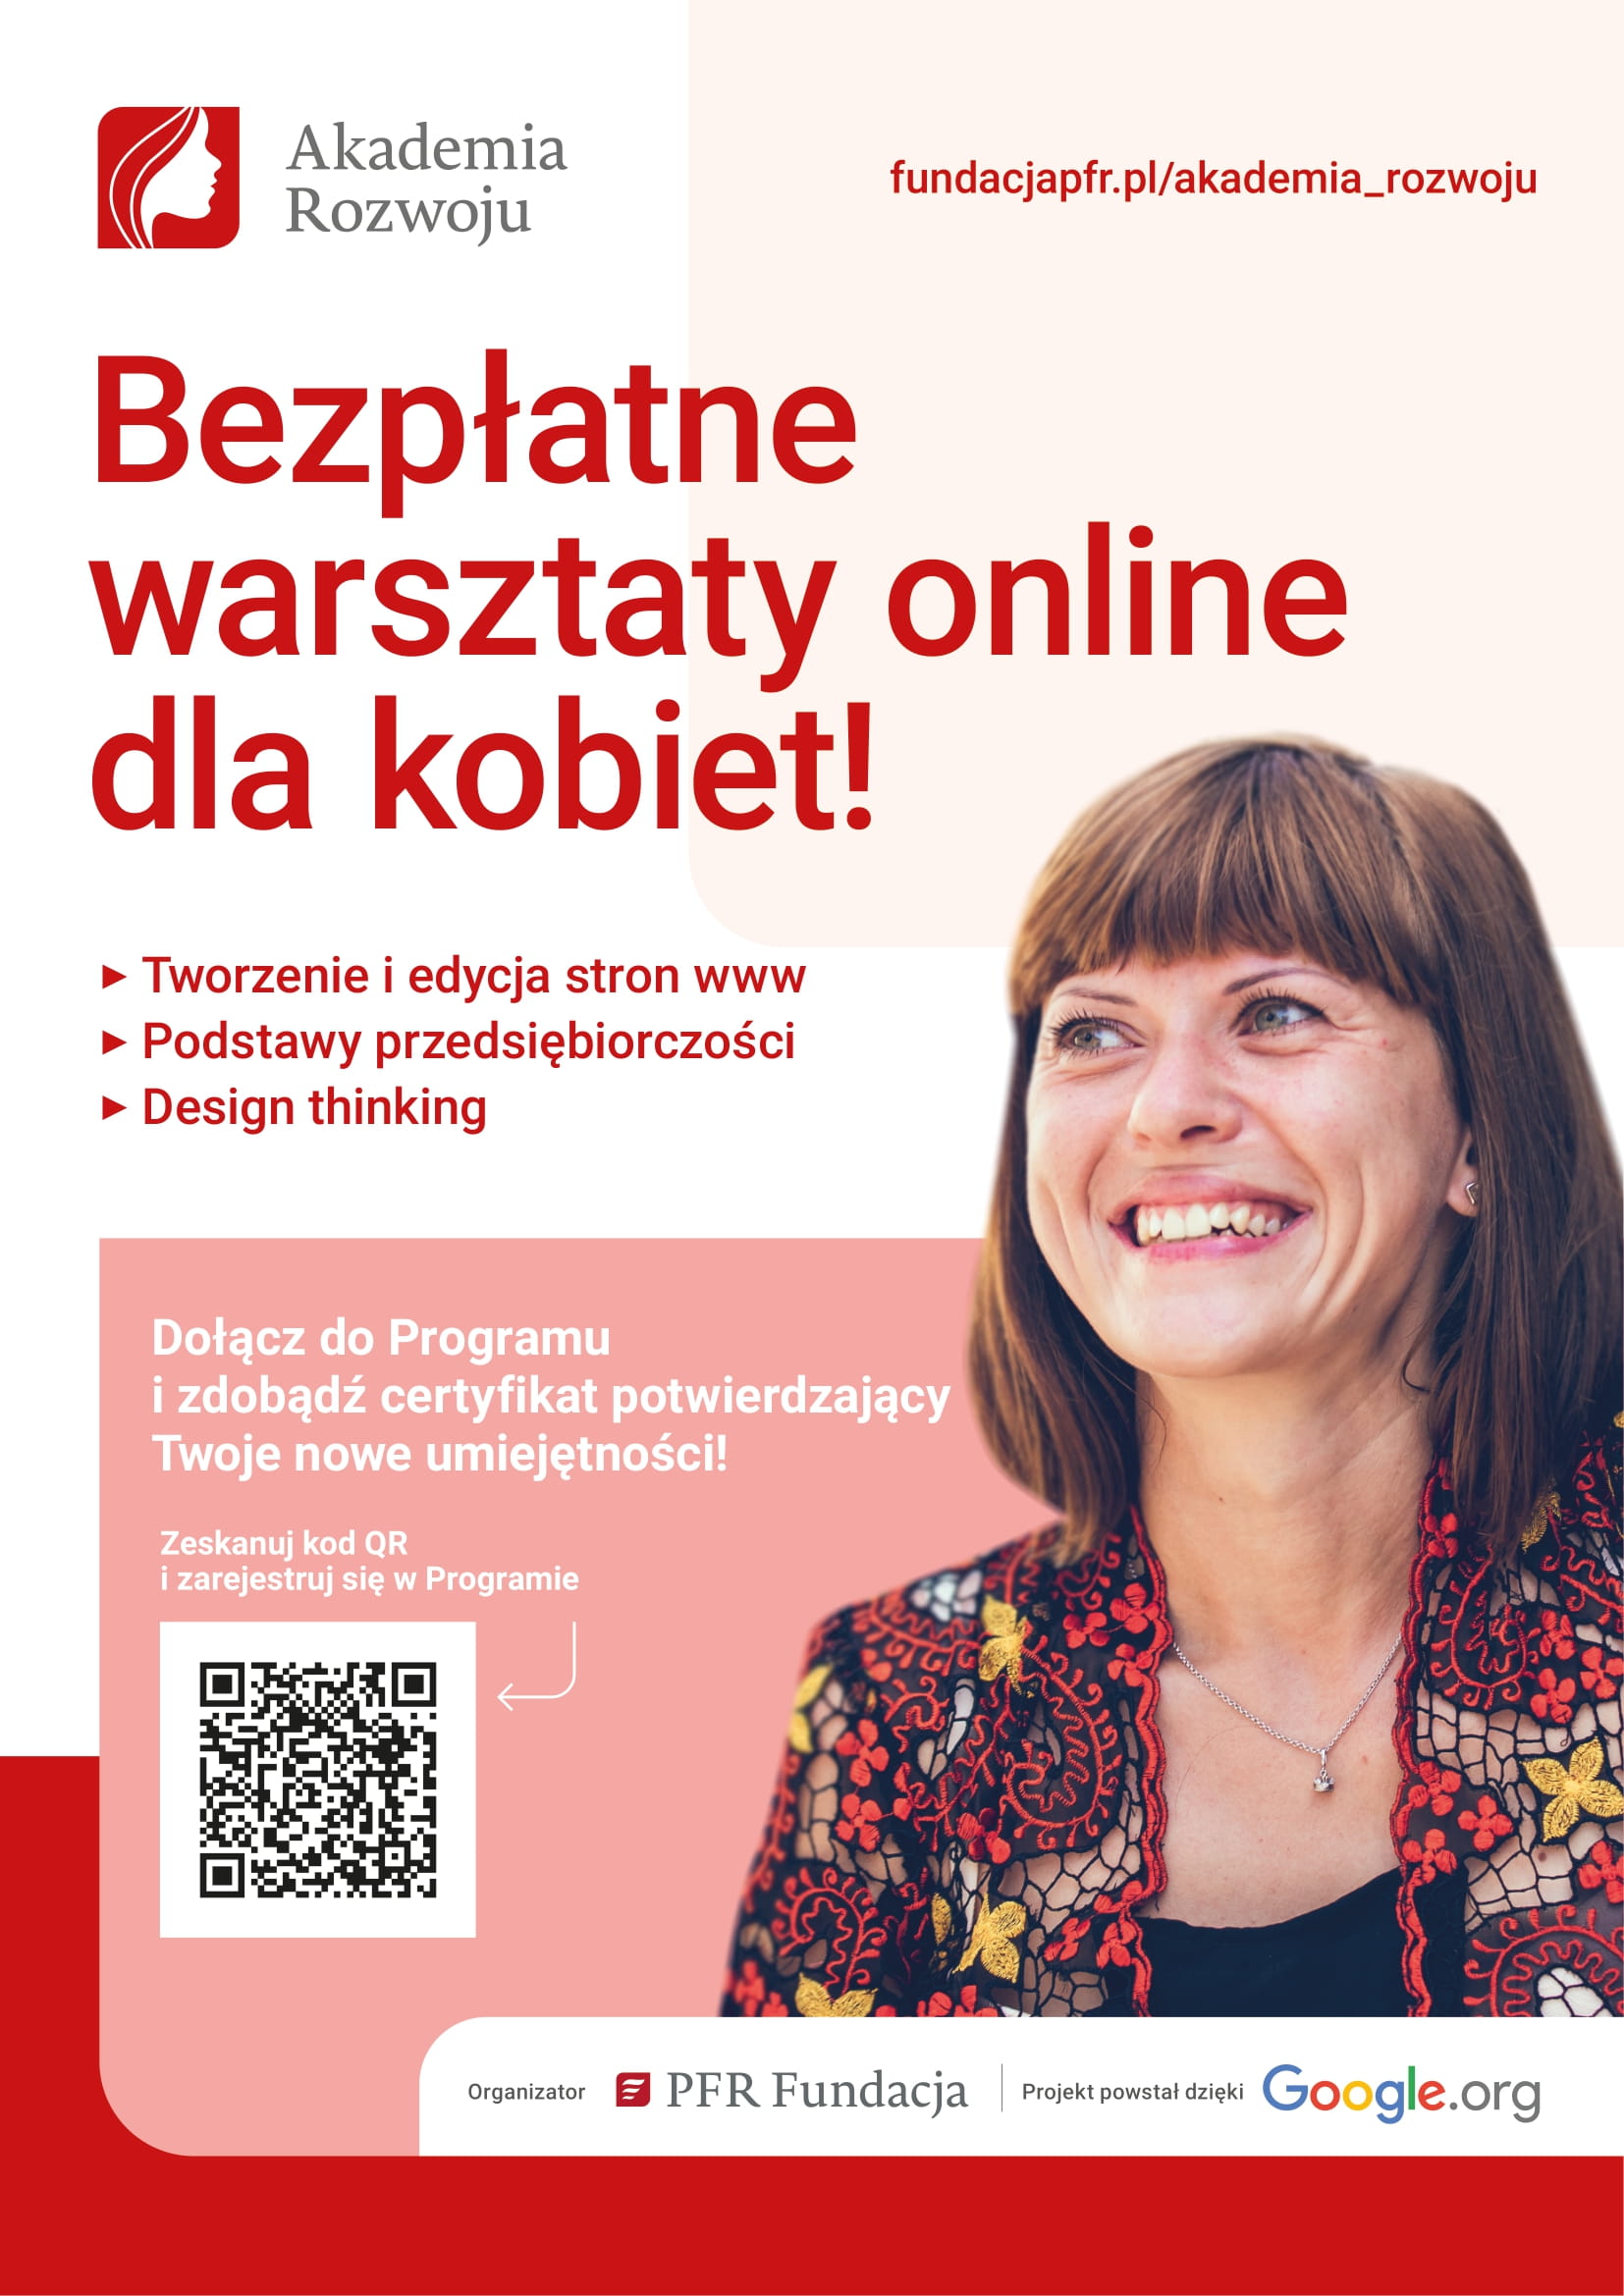 Plakat promujący bezpłatne warsztaty online dla kobiet